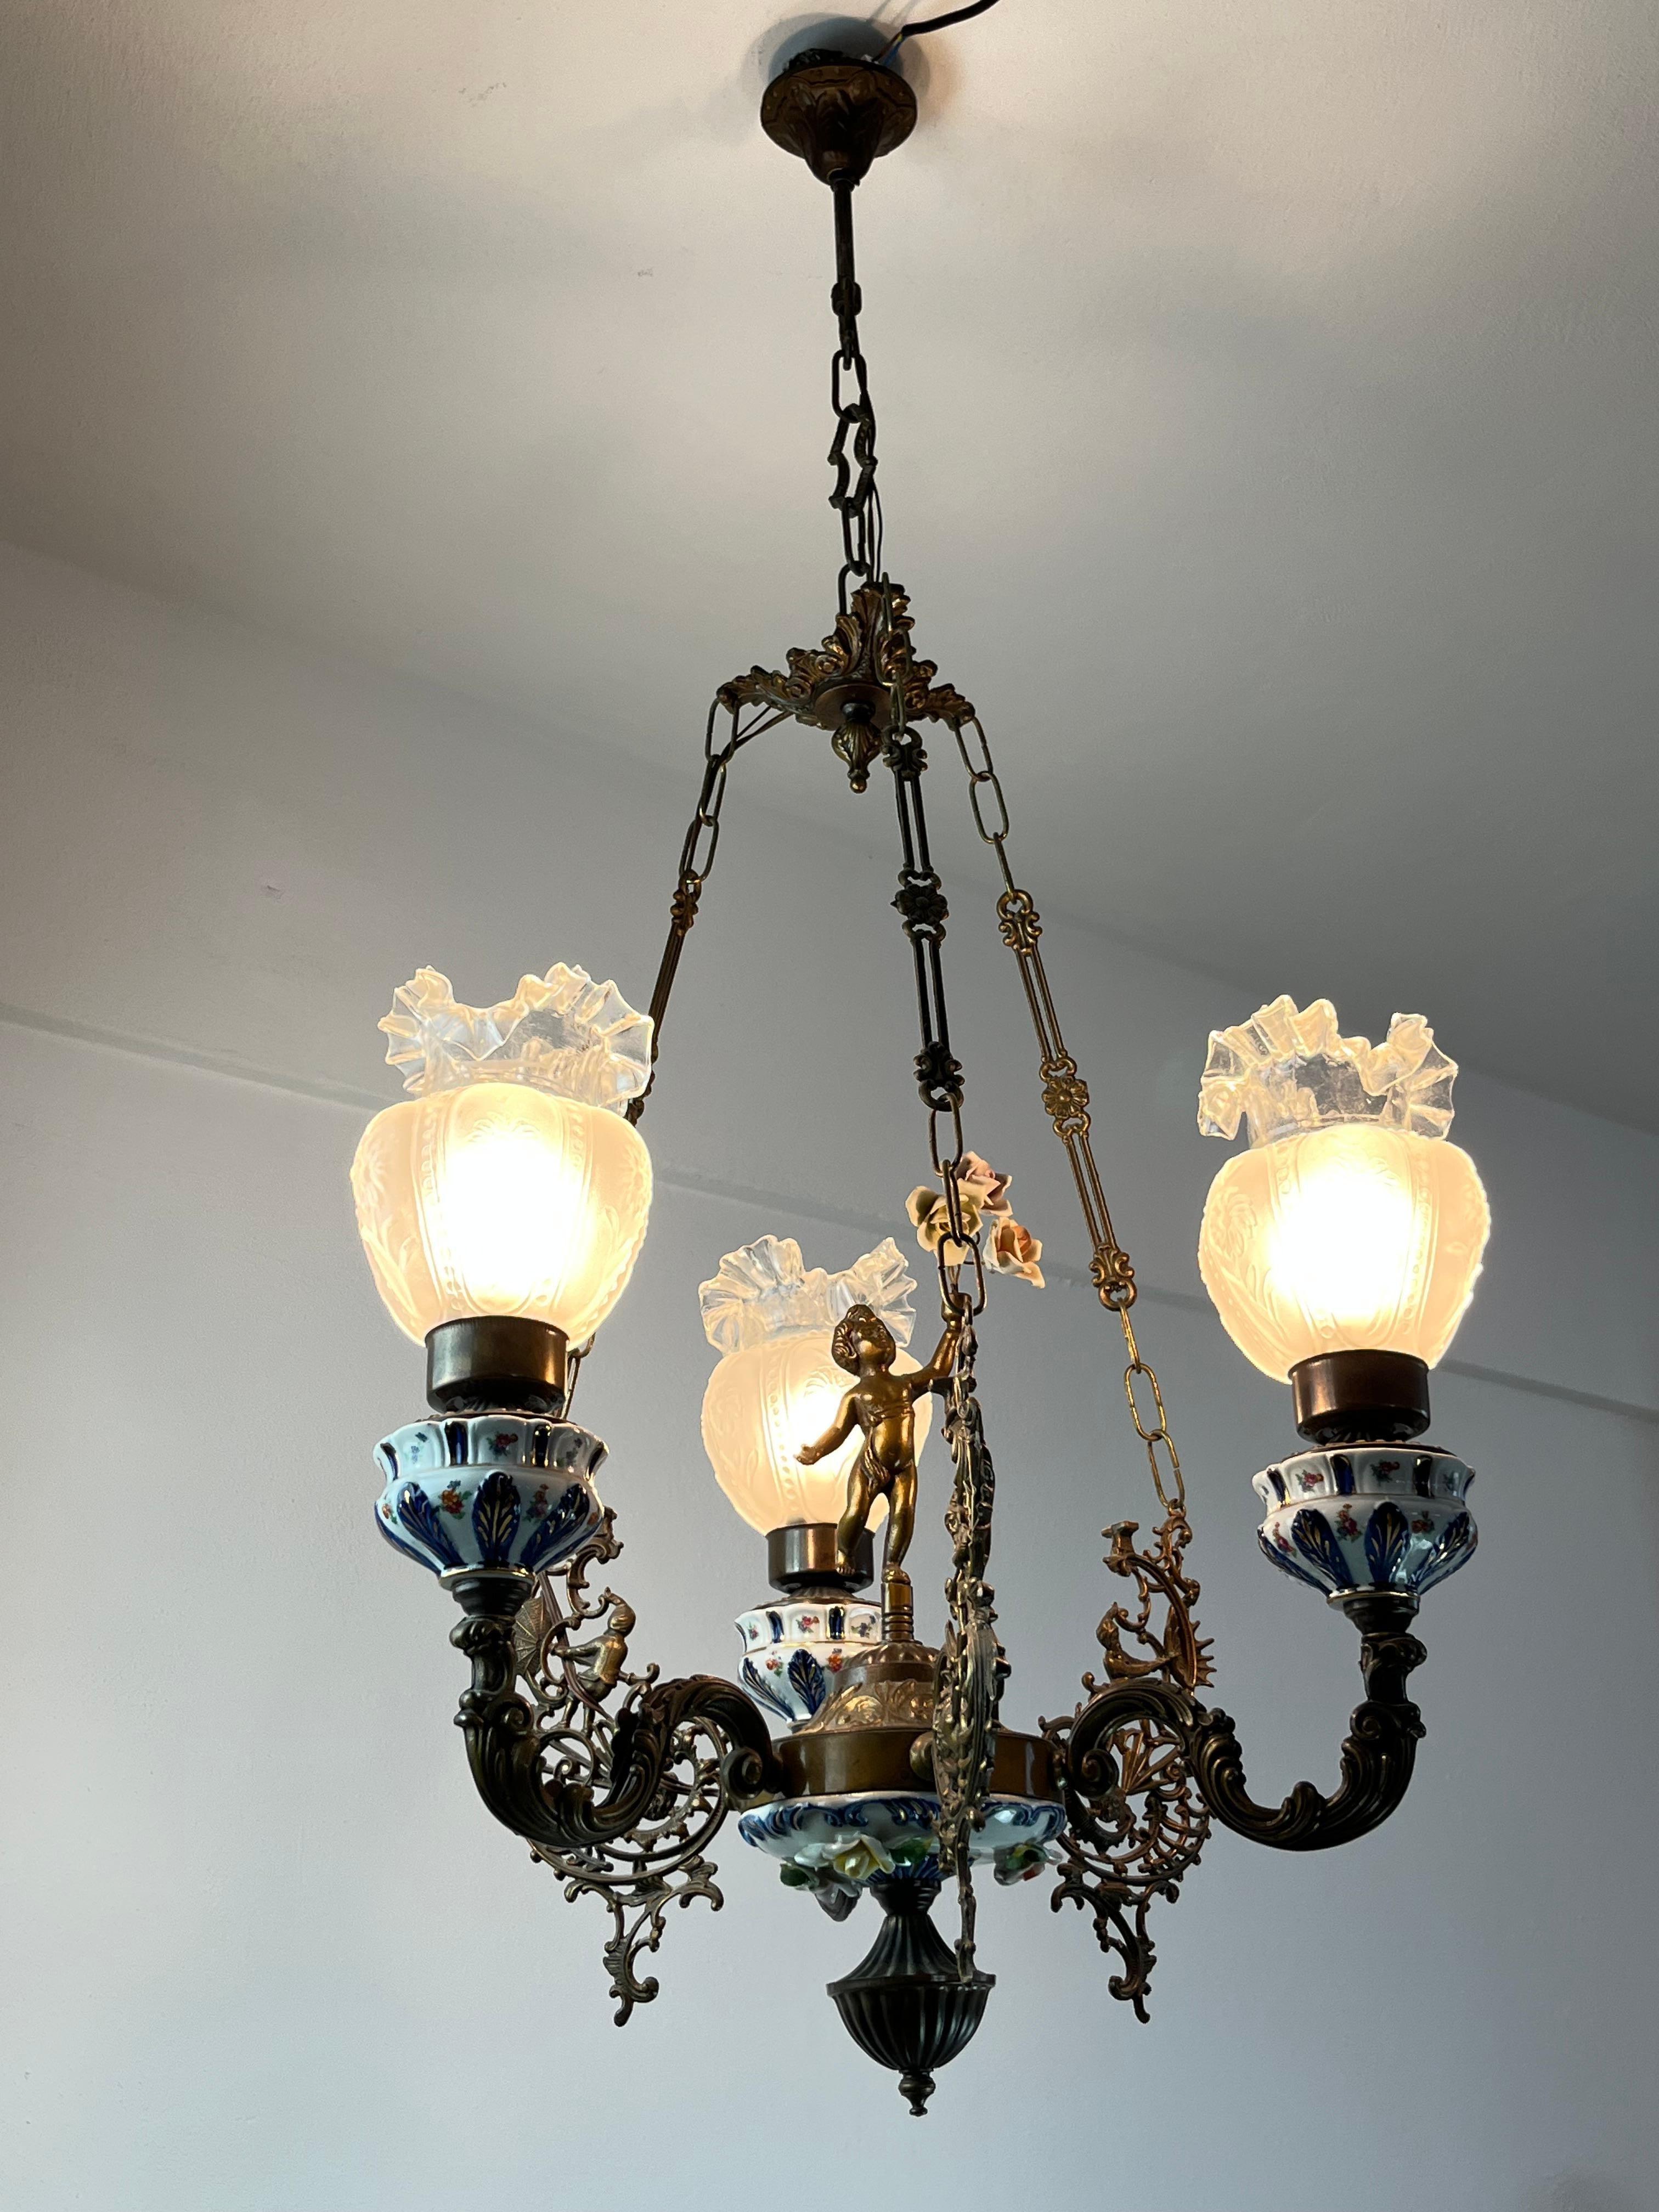 Lustre à 3 lumières en bronze, porcelaine et Capodimonte, Italie, années 1940
Trouvé dans un appartement noble.
Trois bols en verre festonnés.
Il est en excellent état si l'on considère qu'il a presque 100 ans. Connexion de la lampe E14.